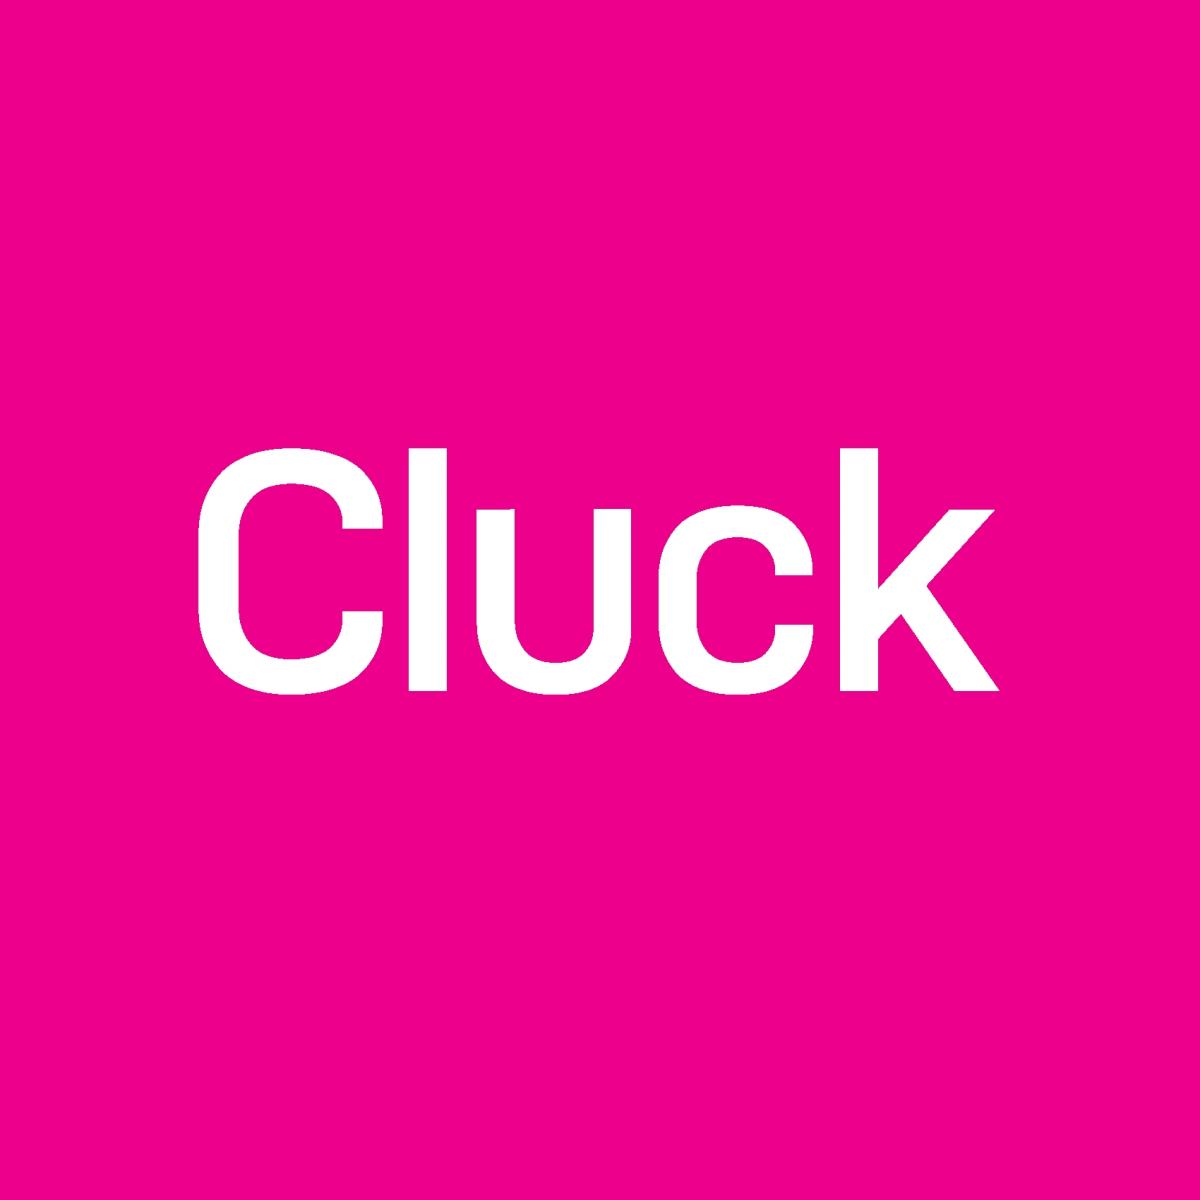 Cluck Design CCAF2022 Sponsor